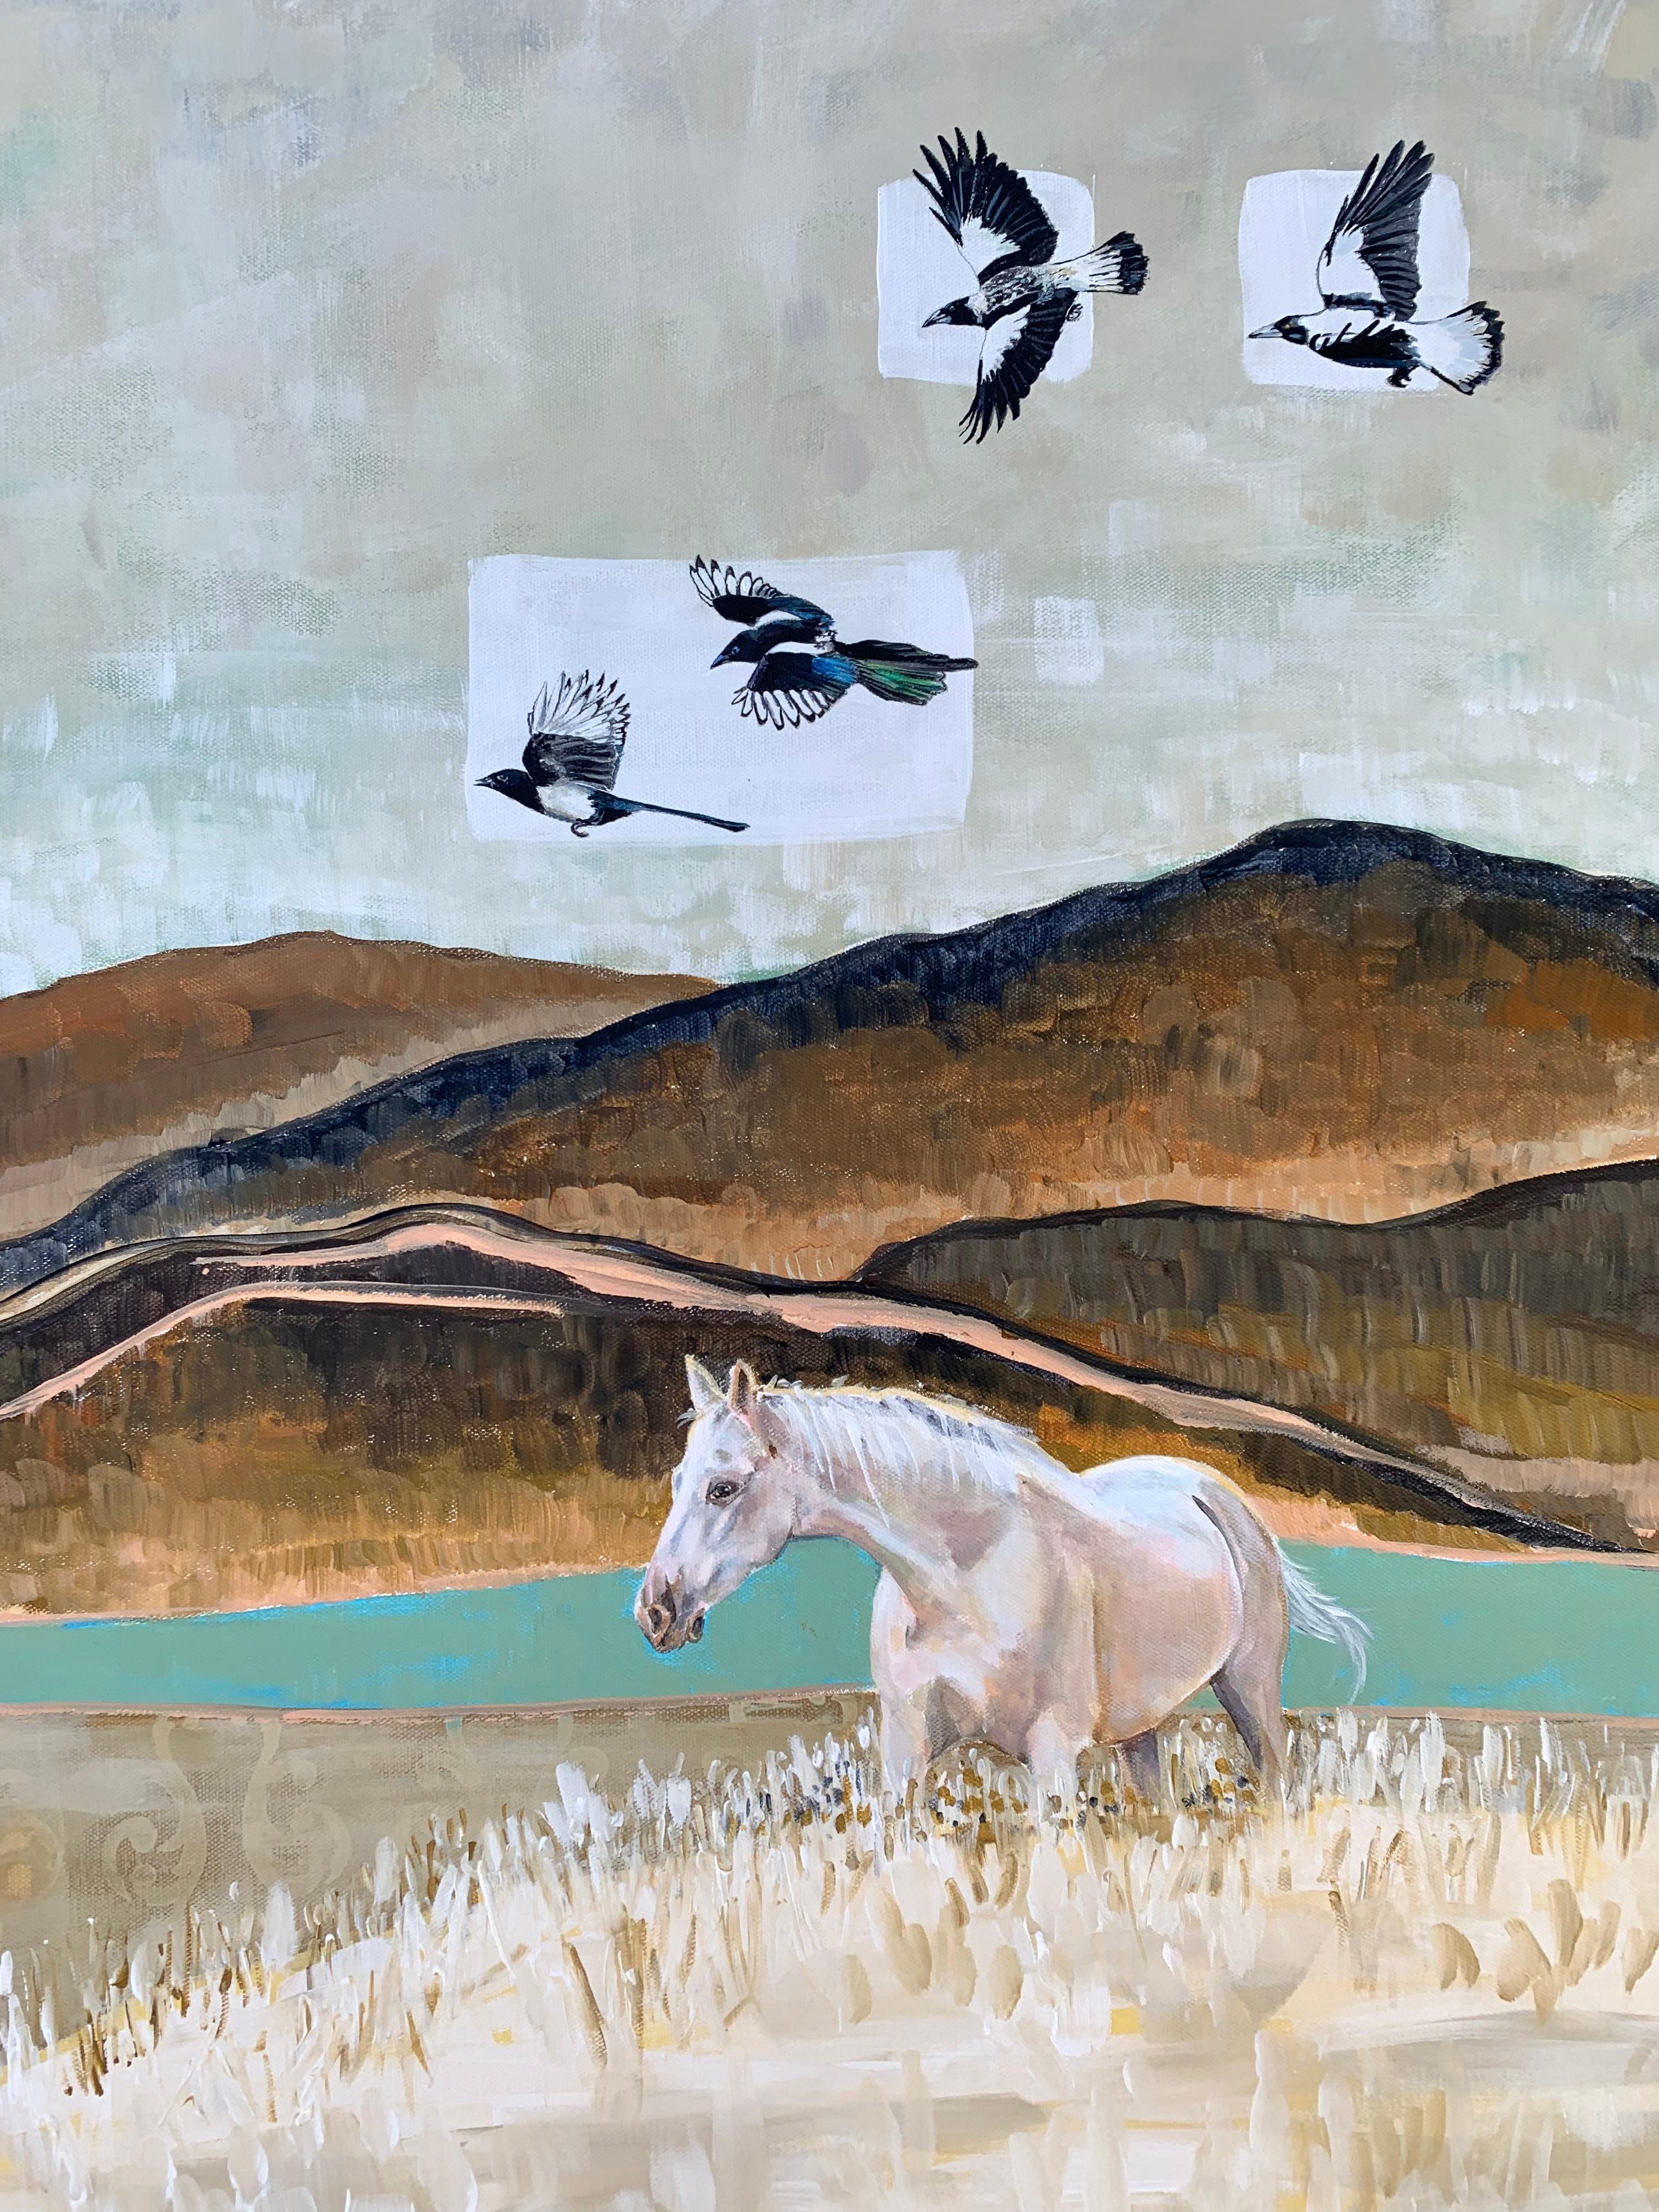 <p>Kommentare der Künstlerin<br>Die Künstlerin Alana Clumeck zeigt eine Ansicht einer Westernlandschaft mit Pferden, die ruhig im Gras grasen. Elstern fliegen über uns hinweg, tummeln sich und schlagen mit den Flügeln, wenn der Wind sie trägt. Die